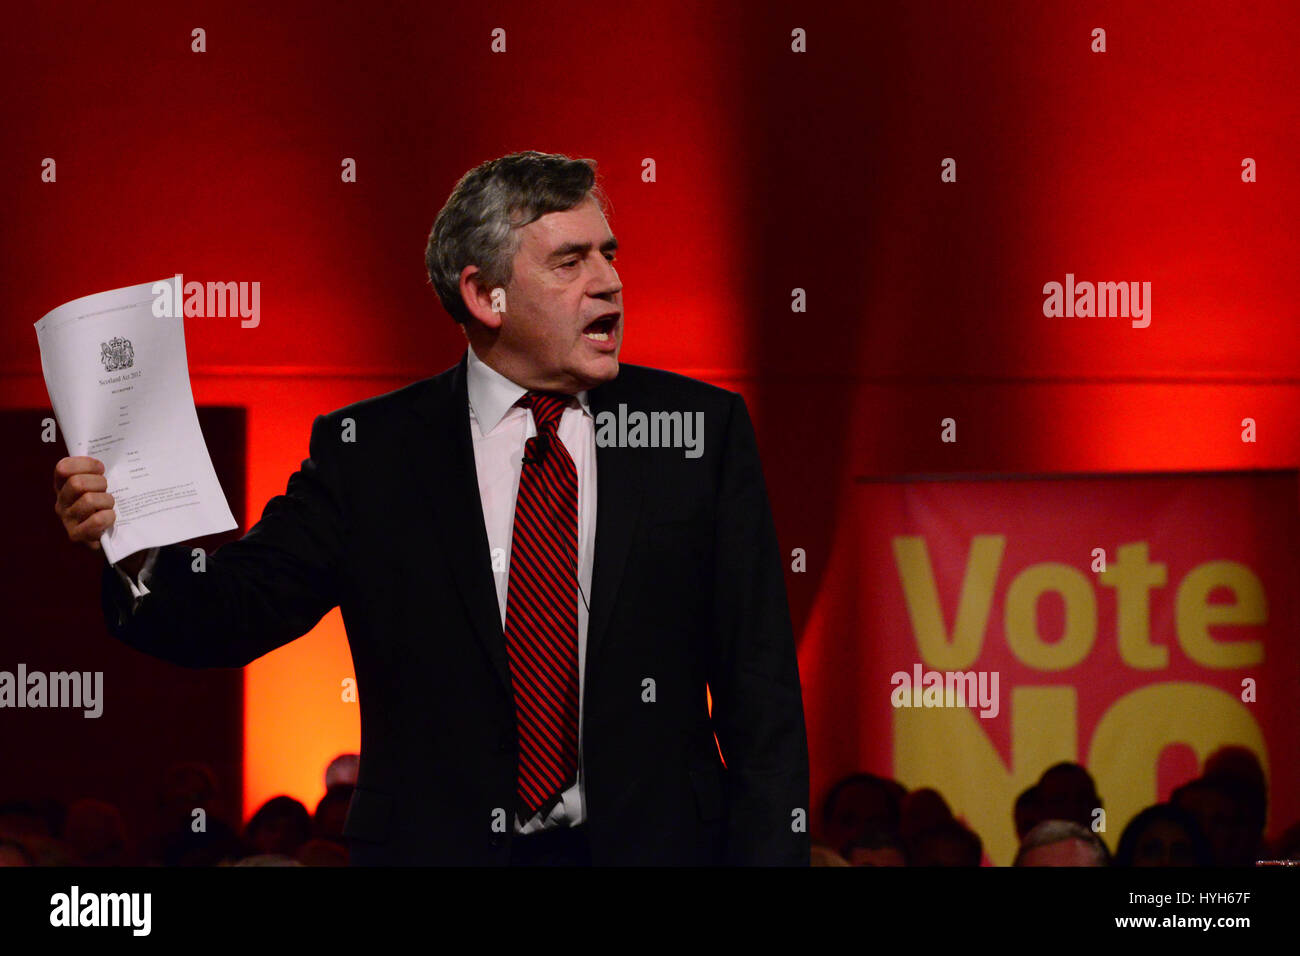 Der ehemalige Premierminister Gordon Brown hält eine Kopie einer Handlung bereits vergangen, mehr Befugnisse für das schottische Parlament enthält, als er bei einem schottischen Labour "Raus die Abstimmung" Event spricht Stockfoto